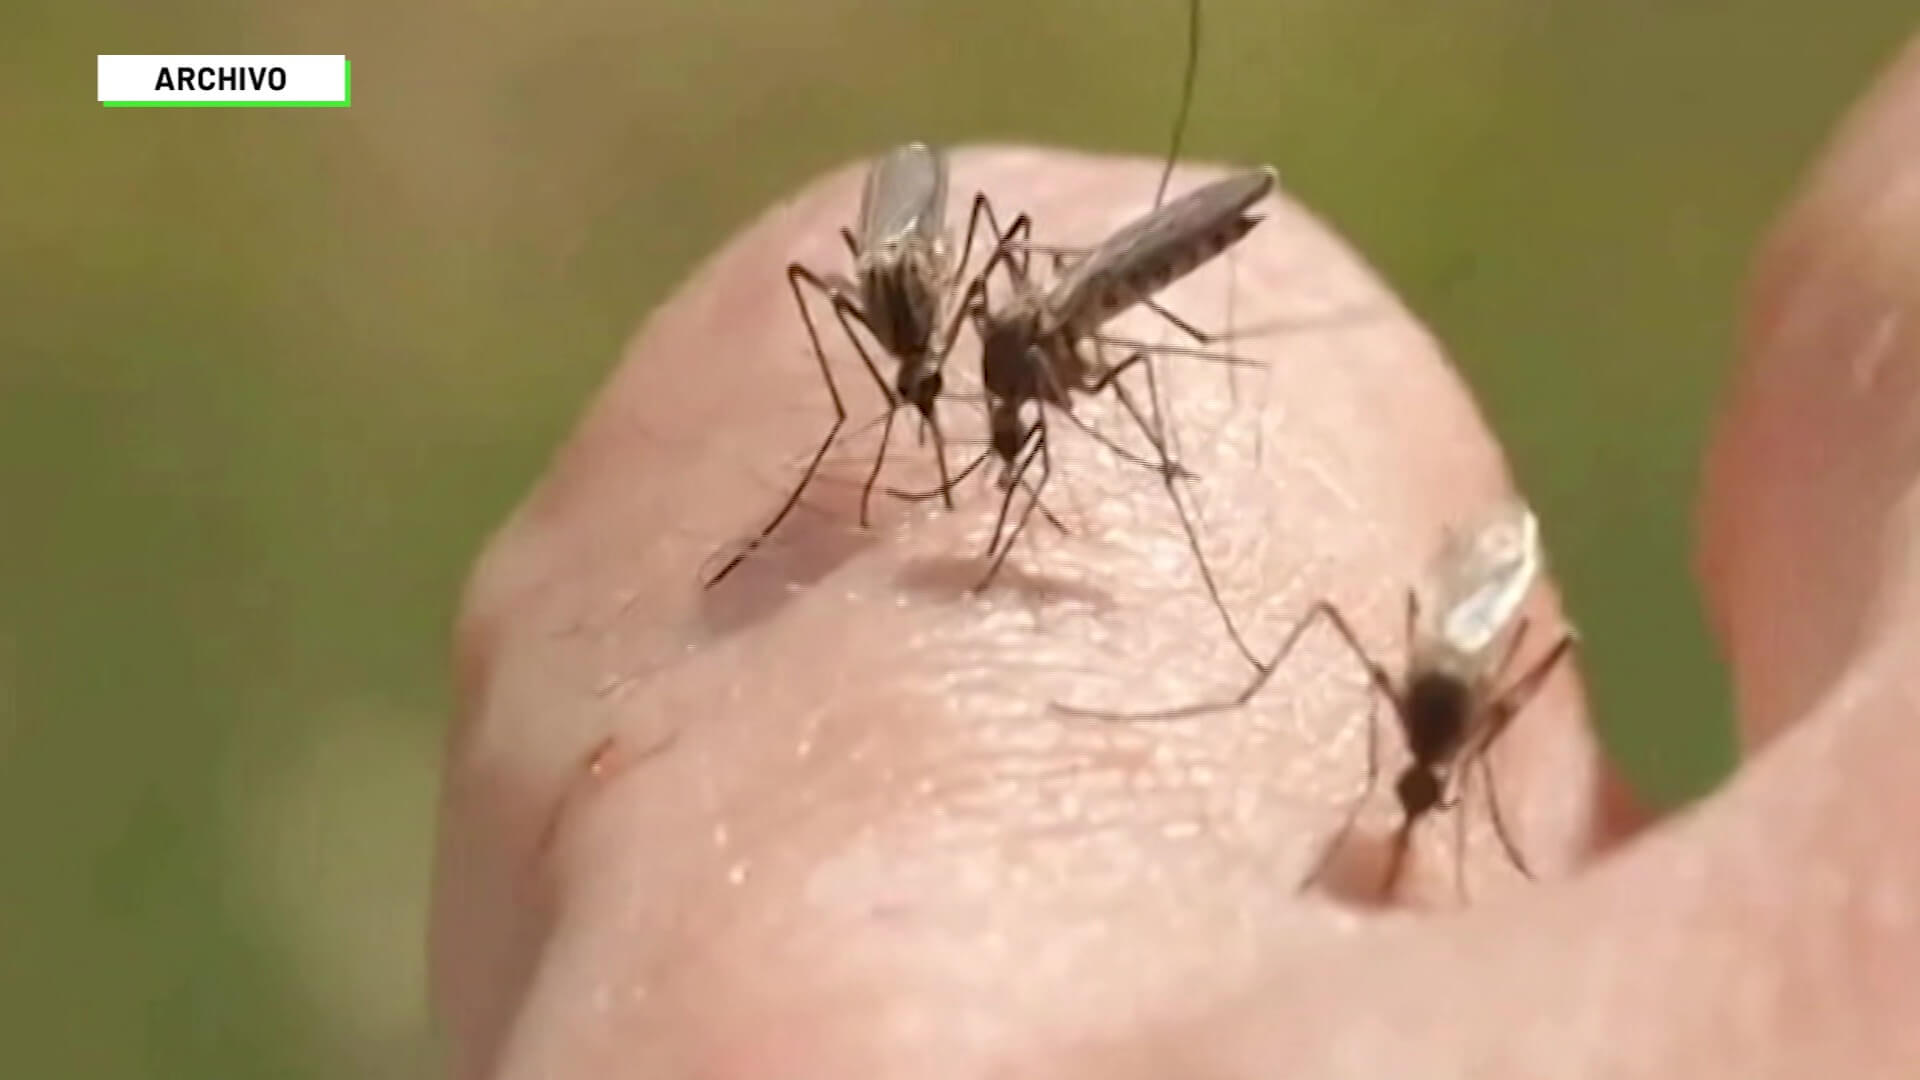 Colombia en primer trimestre brote de dengue llegó a 81 %